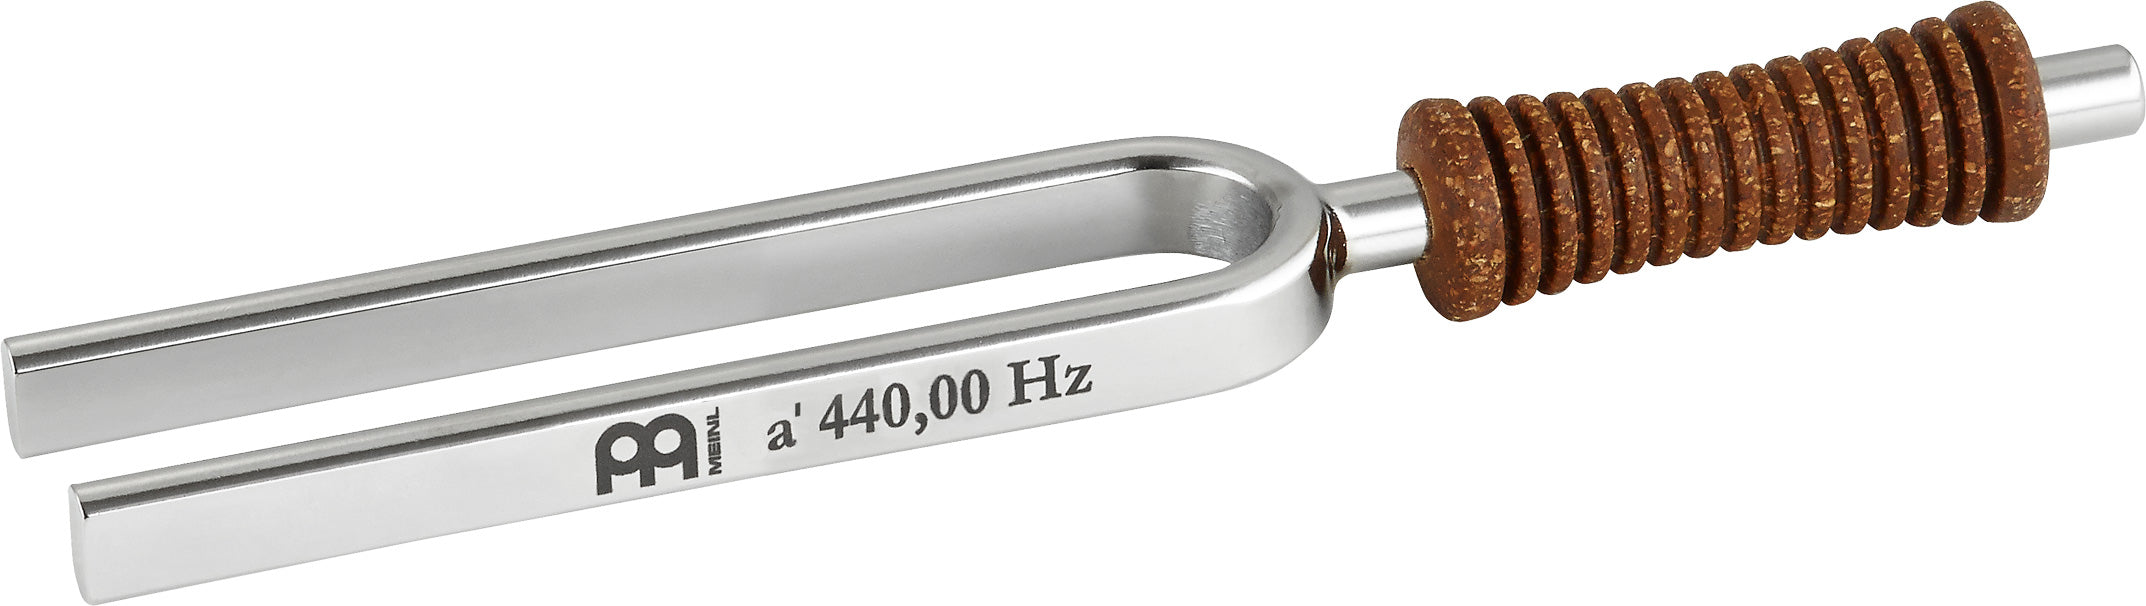 Meinl Tuning Fork 440 Hz - TF-440